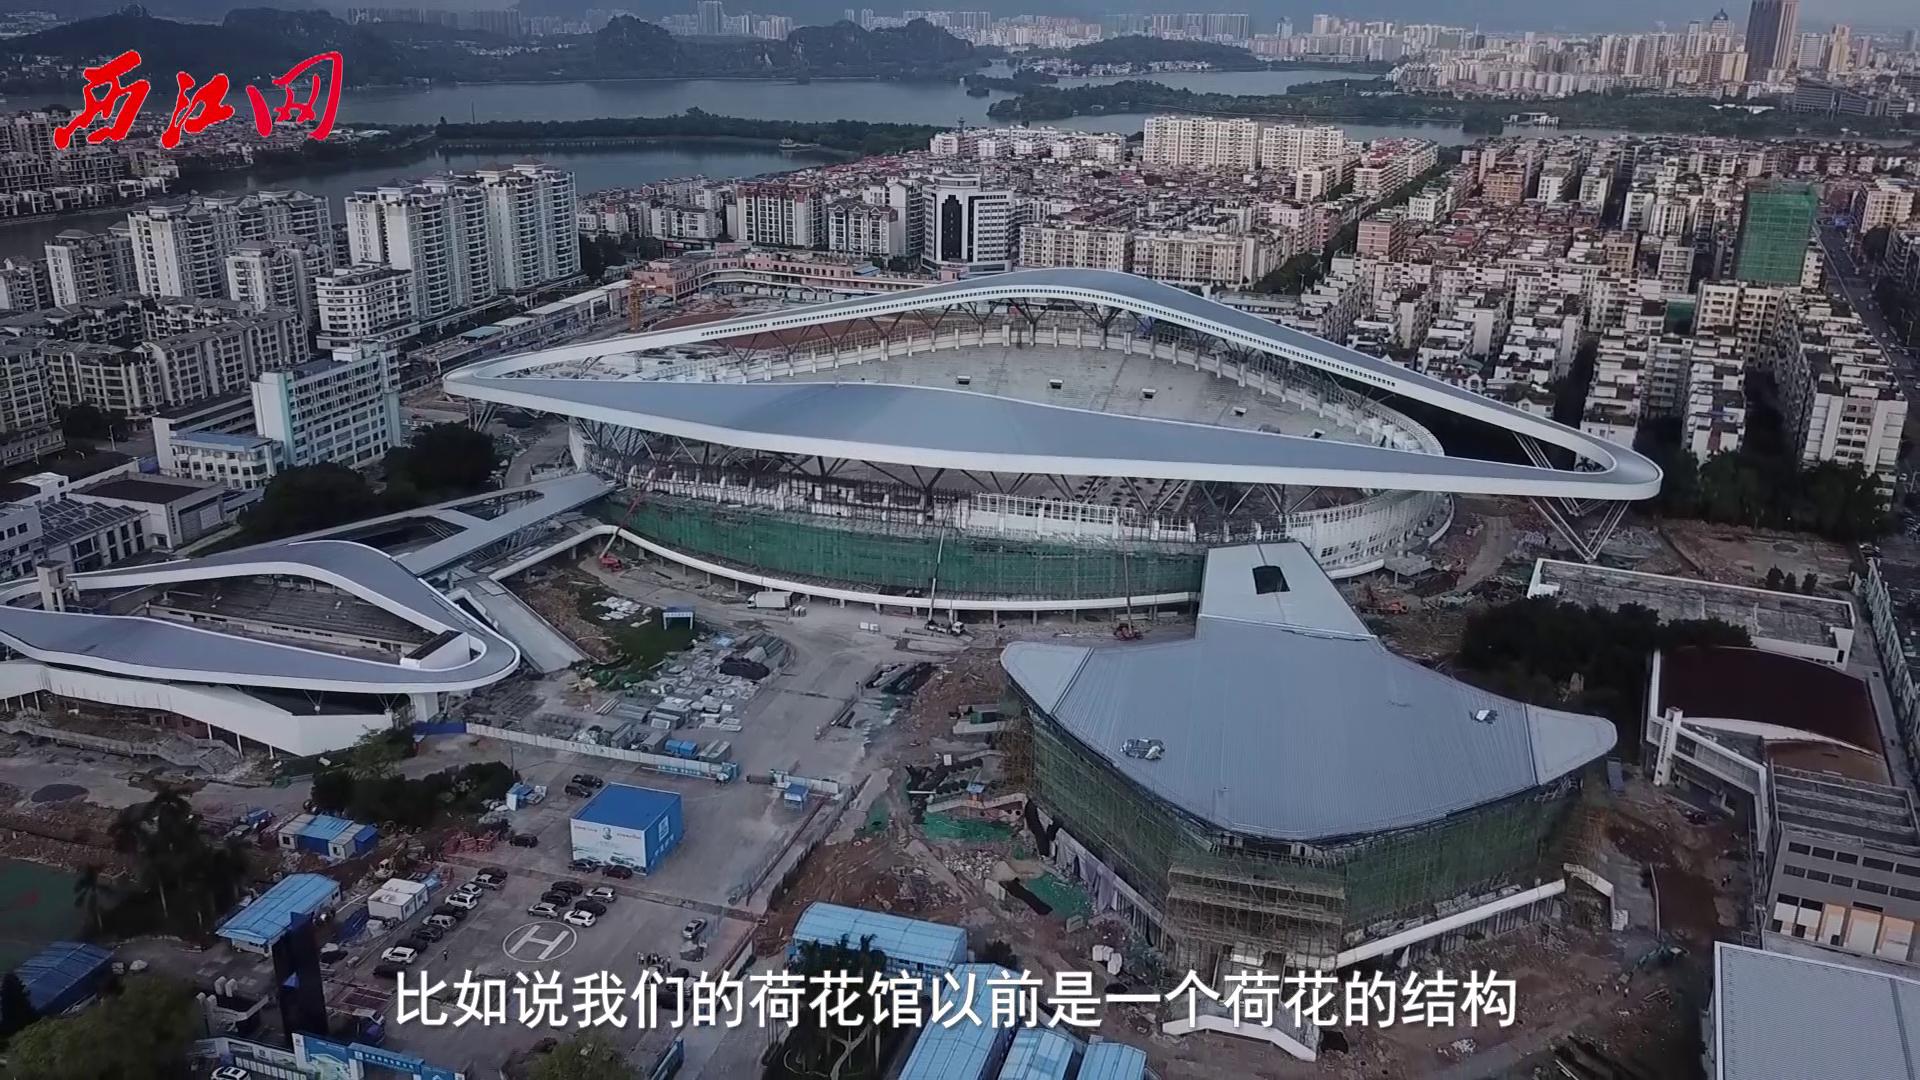 第十五届省运会场馆肇庆体育中心升级改造进程